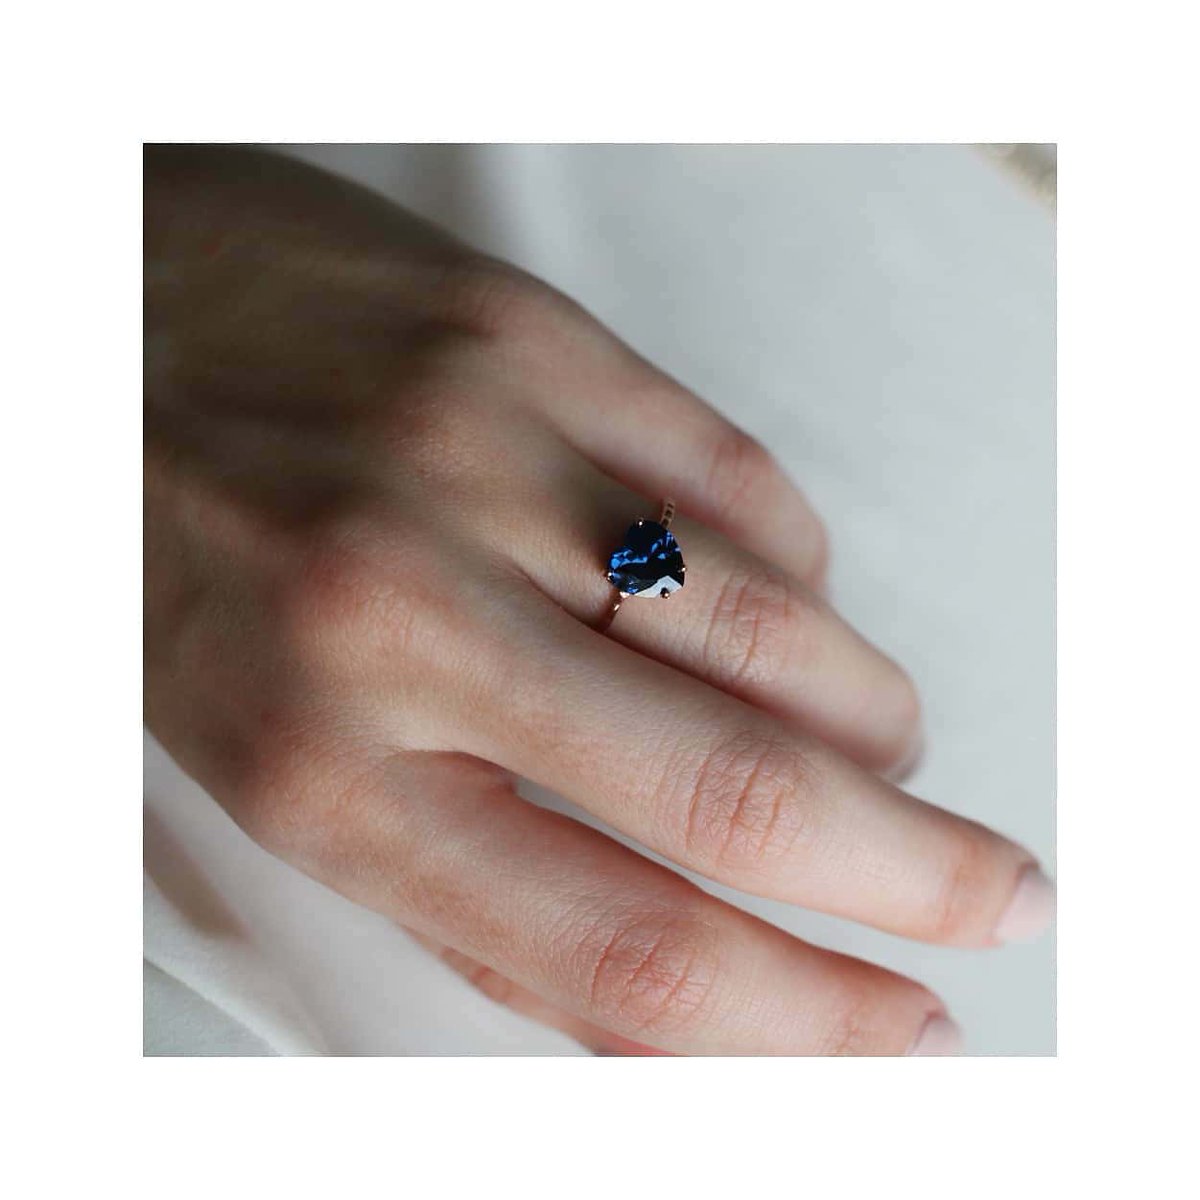 Amore 💙  Kalp Kesim altın yüzüğümüz ile tanışın! pennajewels.com
#love #jewelry #design #jewels #designjewelry #heart #altın #kalp #yüzük #gold #jewellery